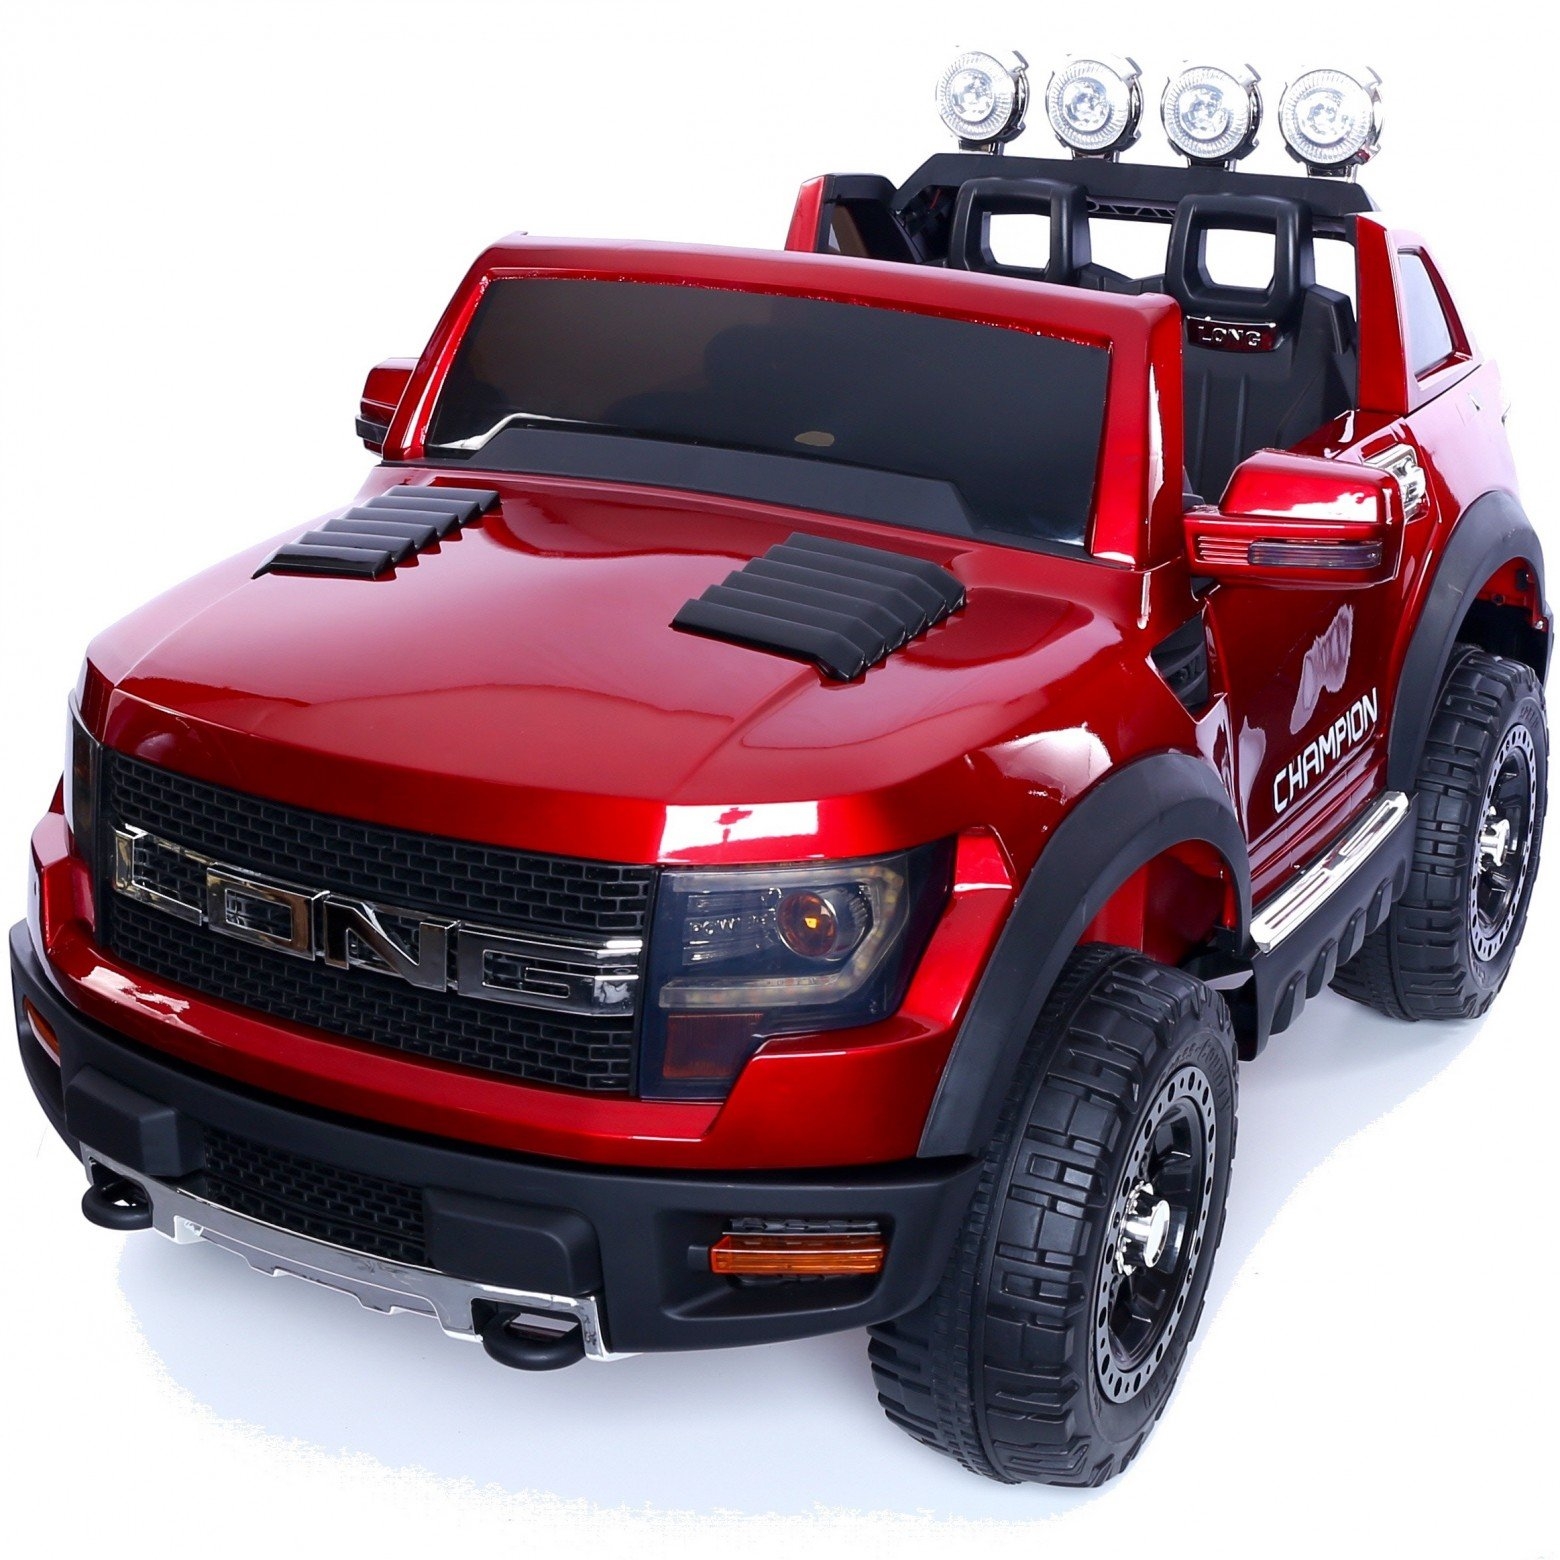 Ford Ranger Wildtrak Style 12v ChildÛªs Electric Ride On Jeep – Red